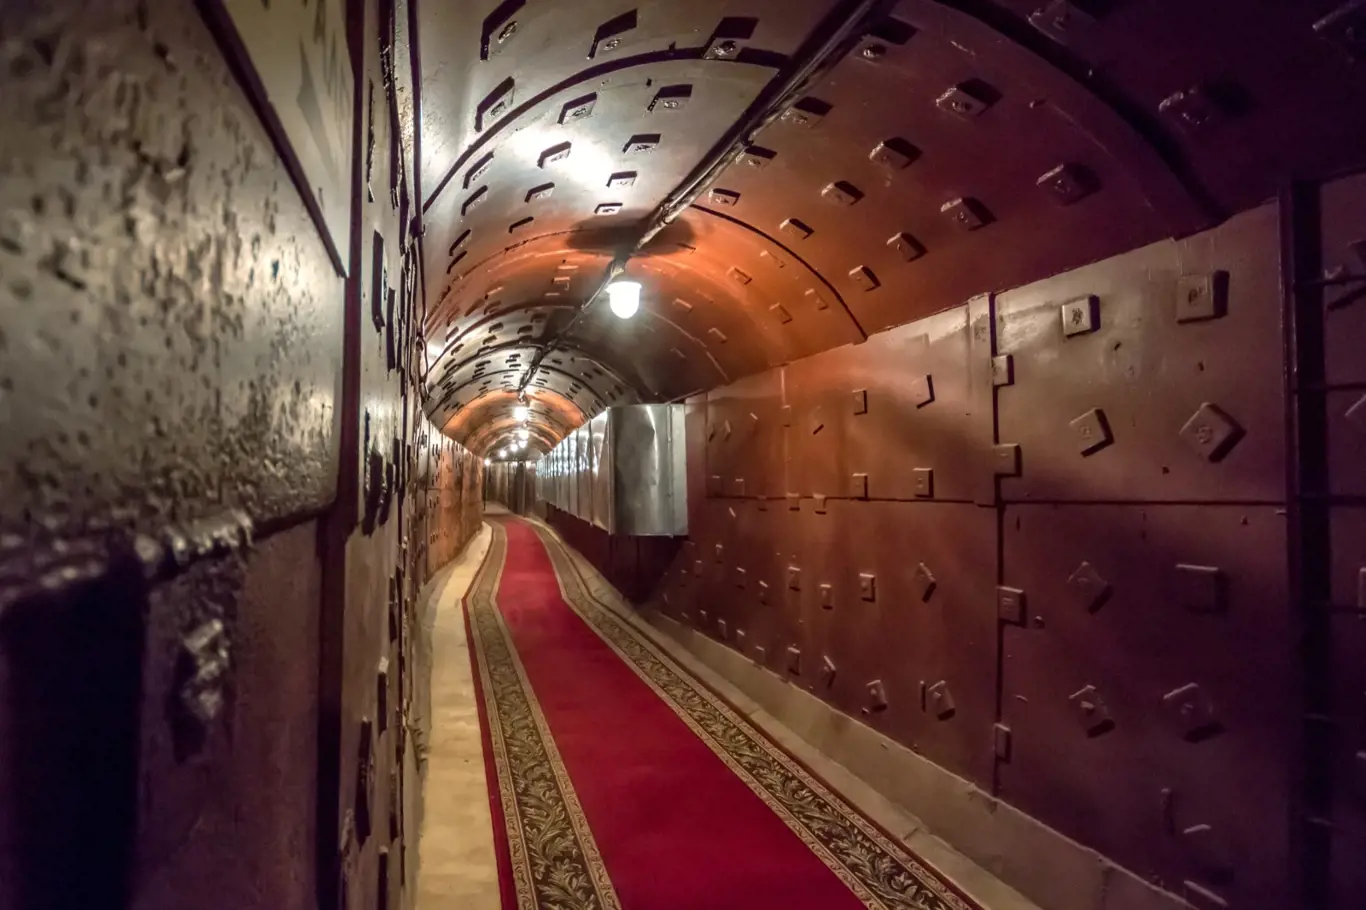 Tunel v Bunkru-42, protijaderném podzemním zařízení Sovětského svazu